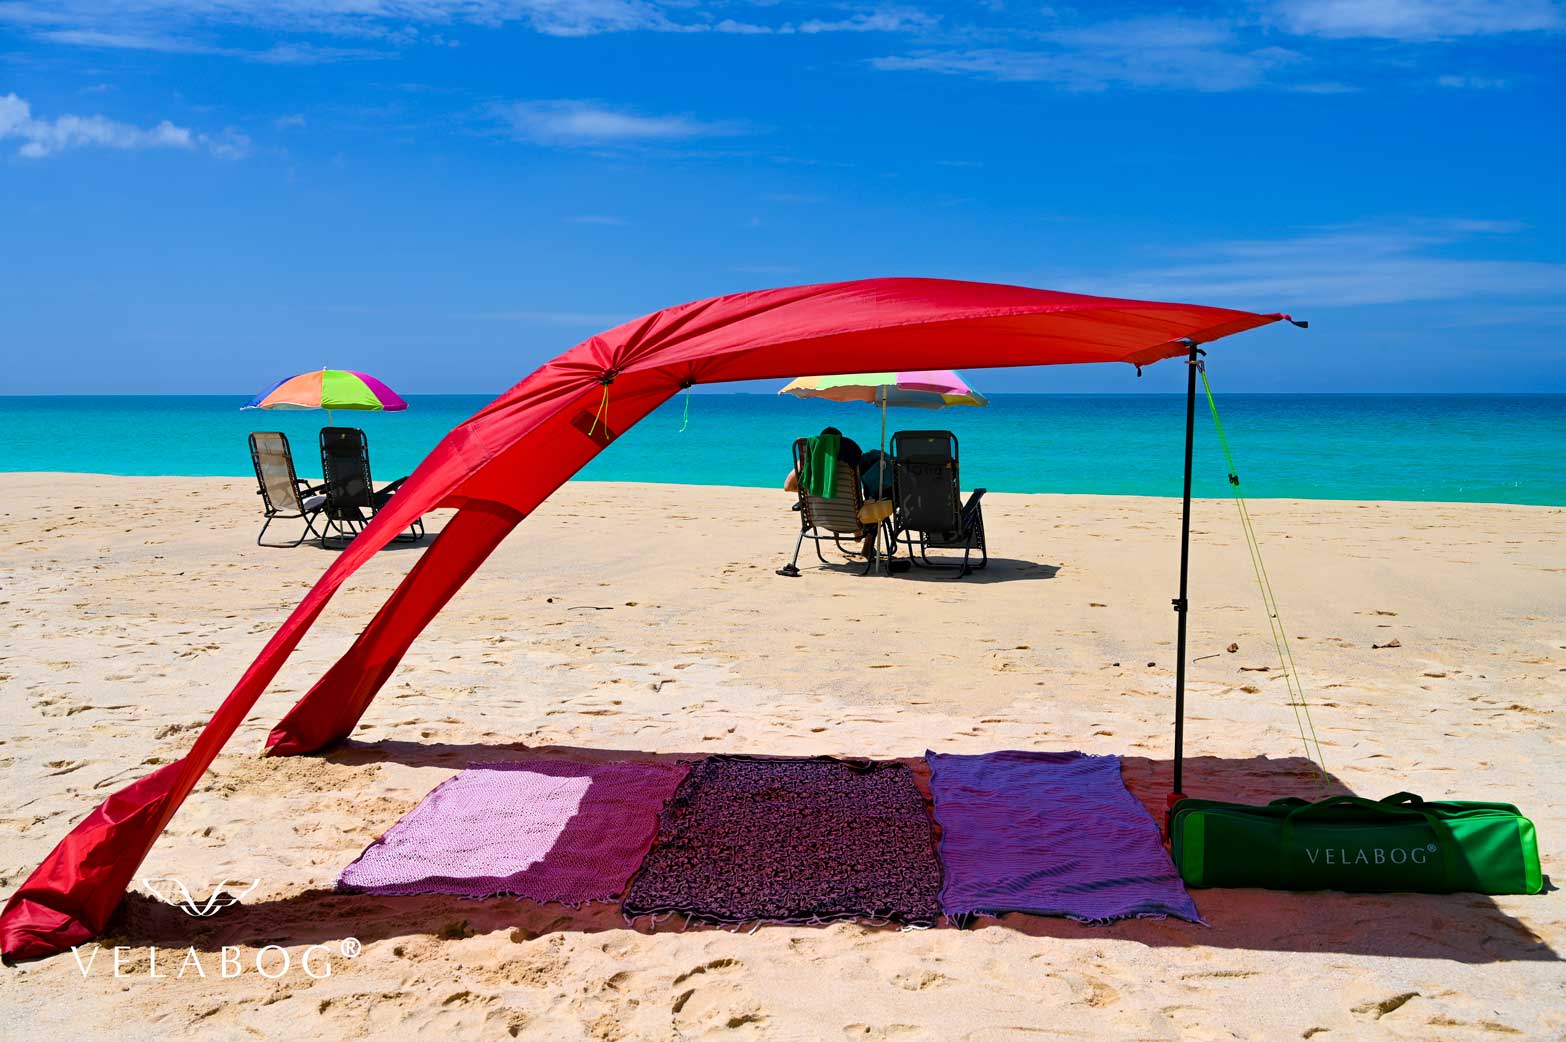 Toldo playa Velabog Breeze rojo. La mejor refugio y protección solar en la playa. Mucha más sombra en comparación con sombrillas de playa. Mucho más aire en comparación con carpas de playa. Opción de montaje desde viento ligero a fuerte. Sombra grande. Comparación con sombrillas de playa.